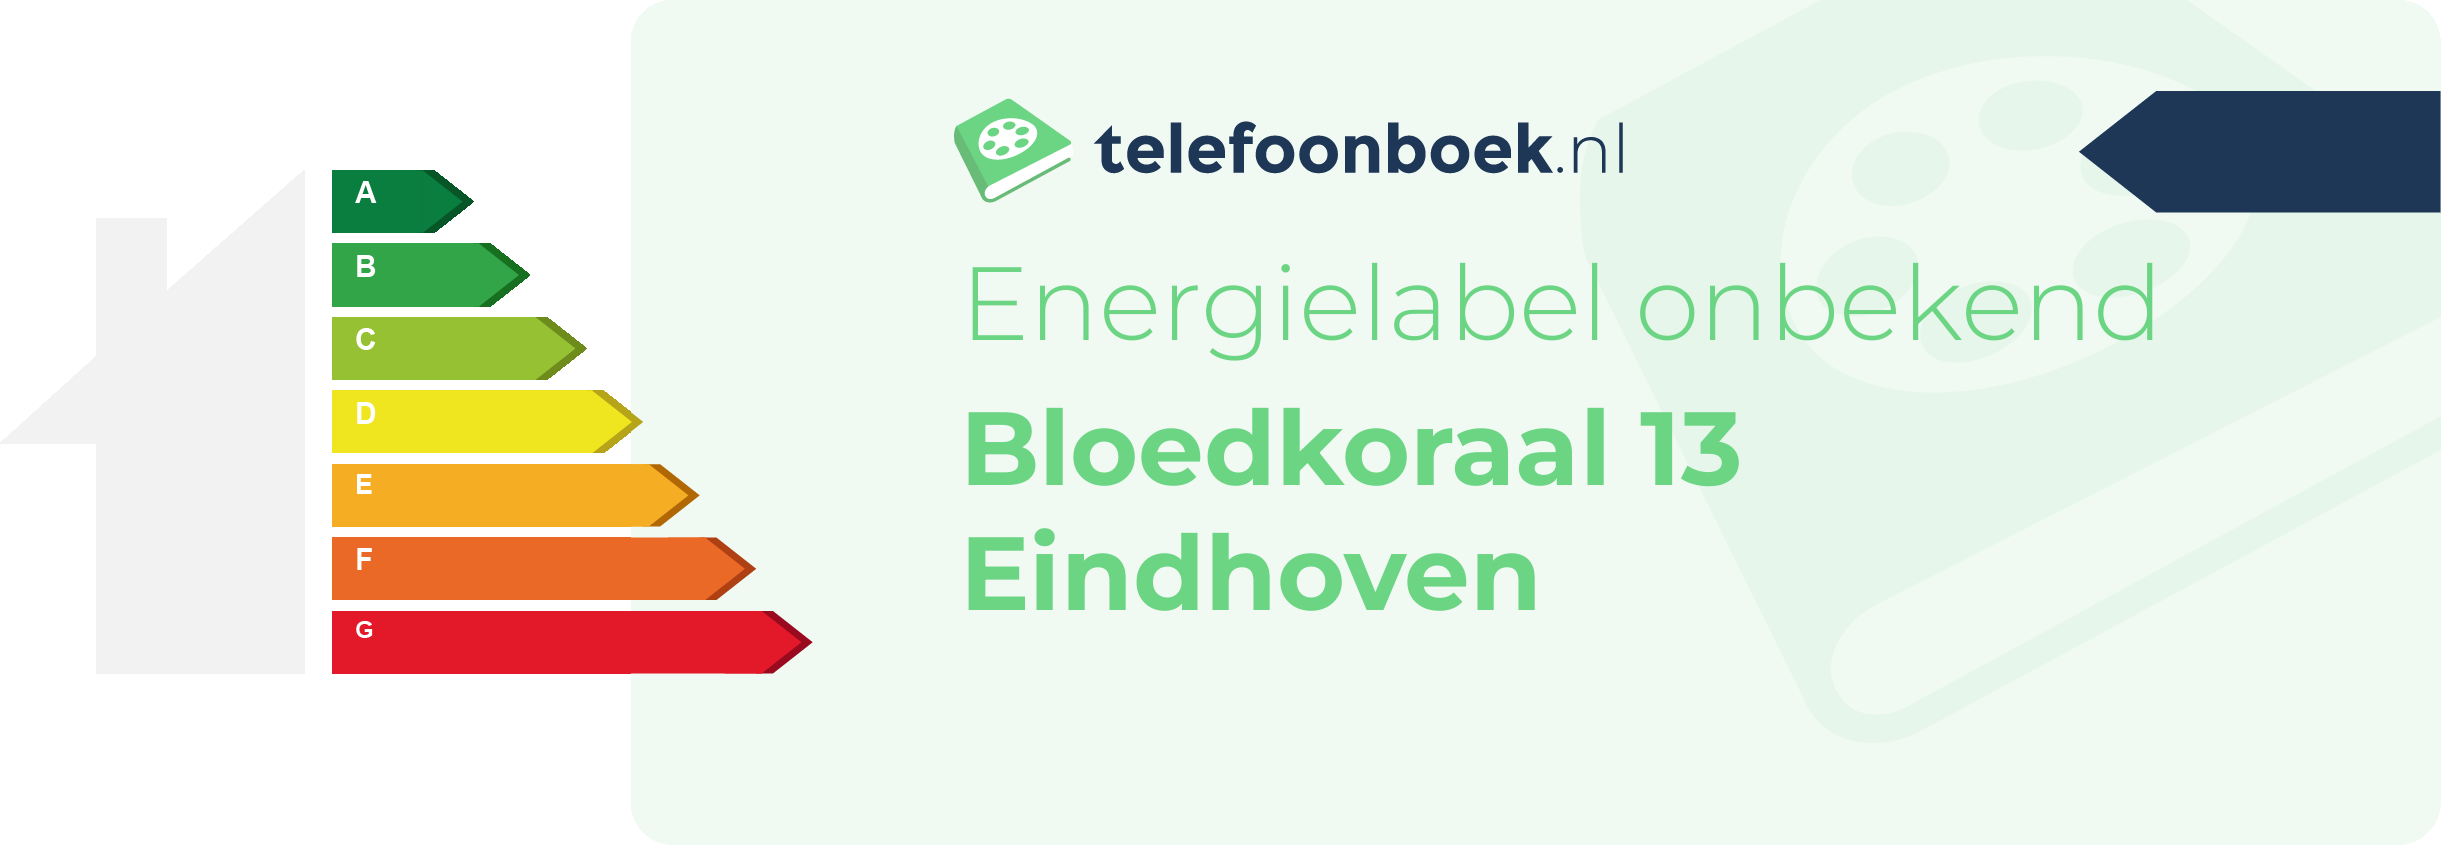 Energielabel Bloedkoraal 13 Eindhoven